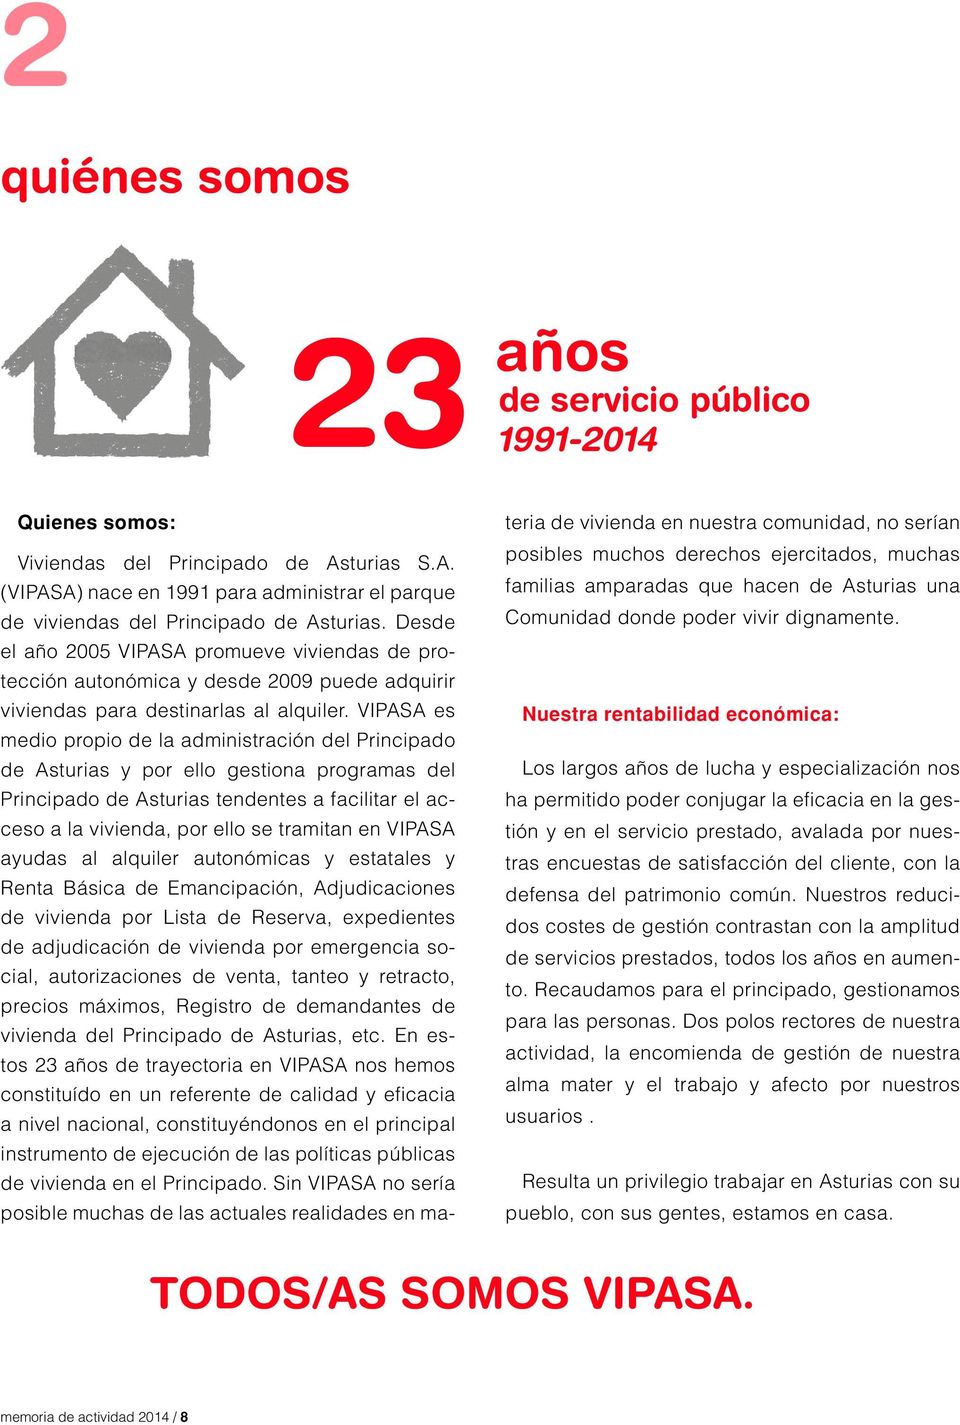 VIPASA es medio propio de la administración del Principado de Asturias y por ello gestiona programas del Principado de Asturias tendentes a facilitar el acceso a la vivienda, por ello se tramitan en